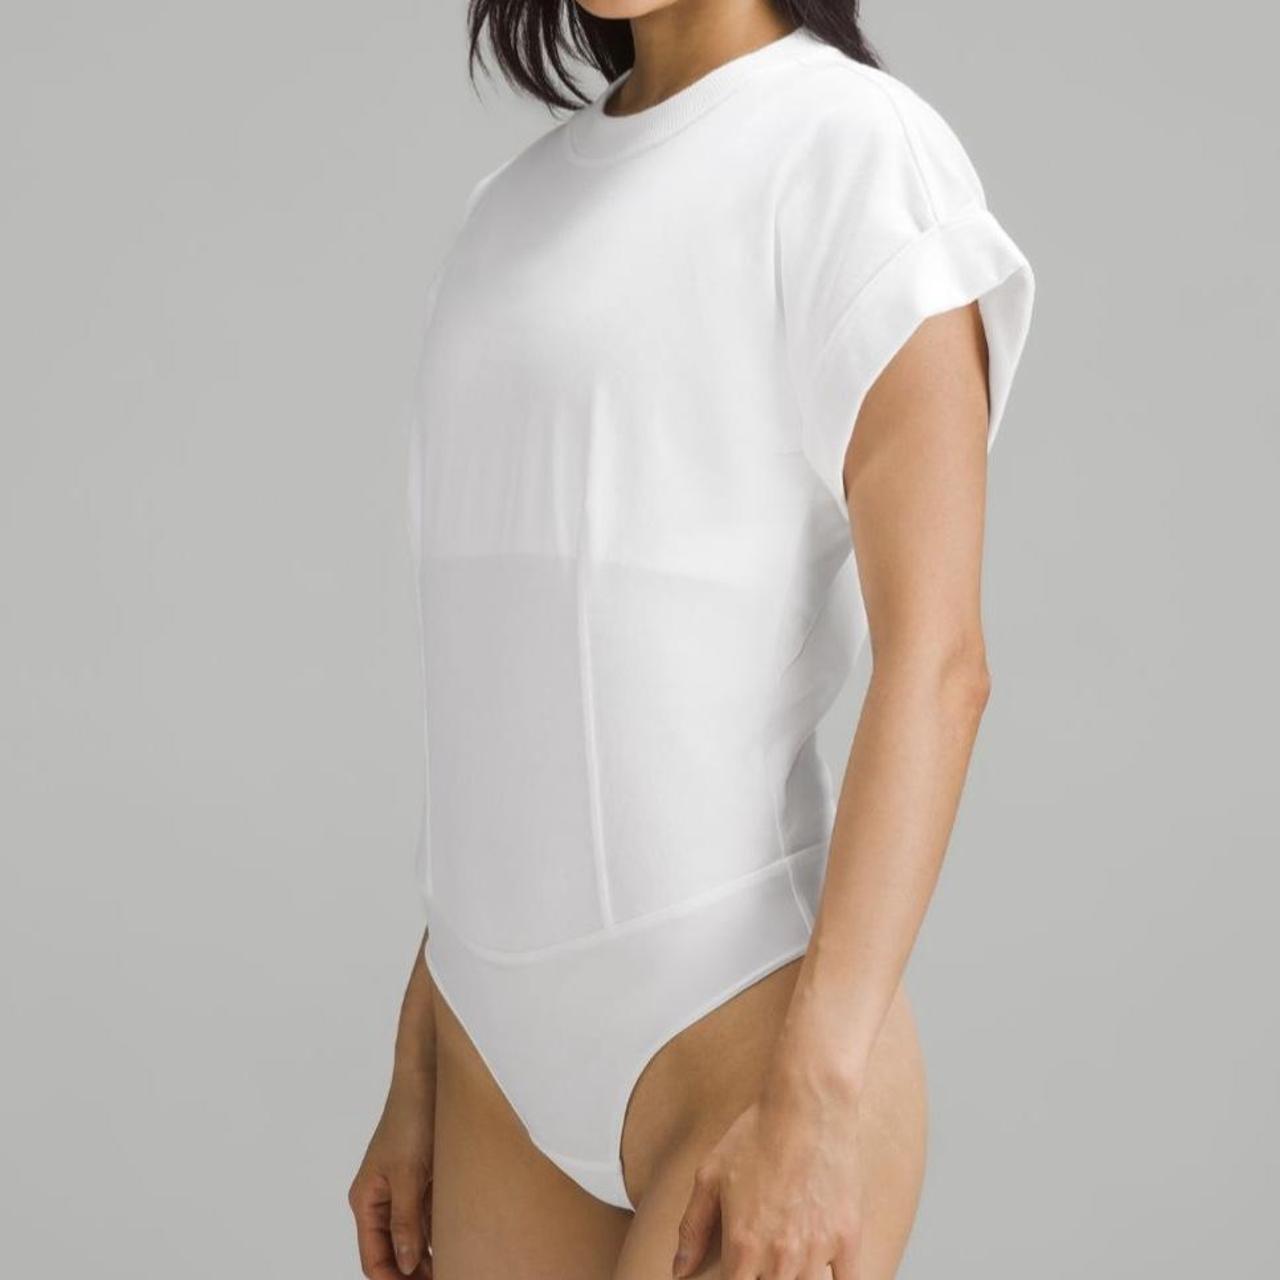 Lululemon bodysuit swipe for more pics, Size